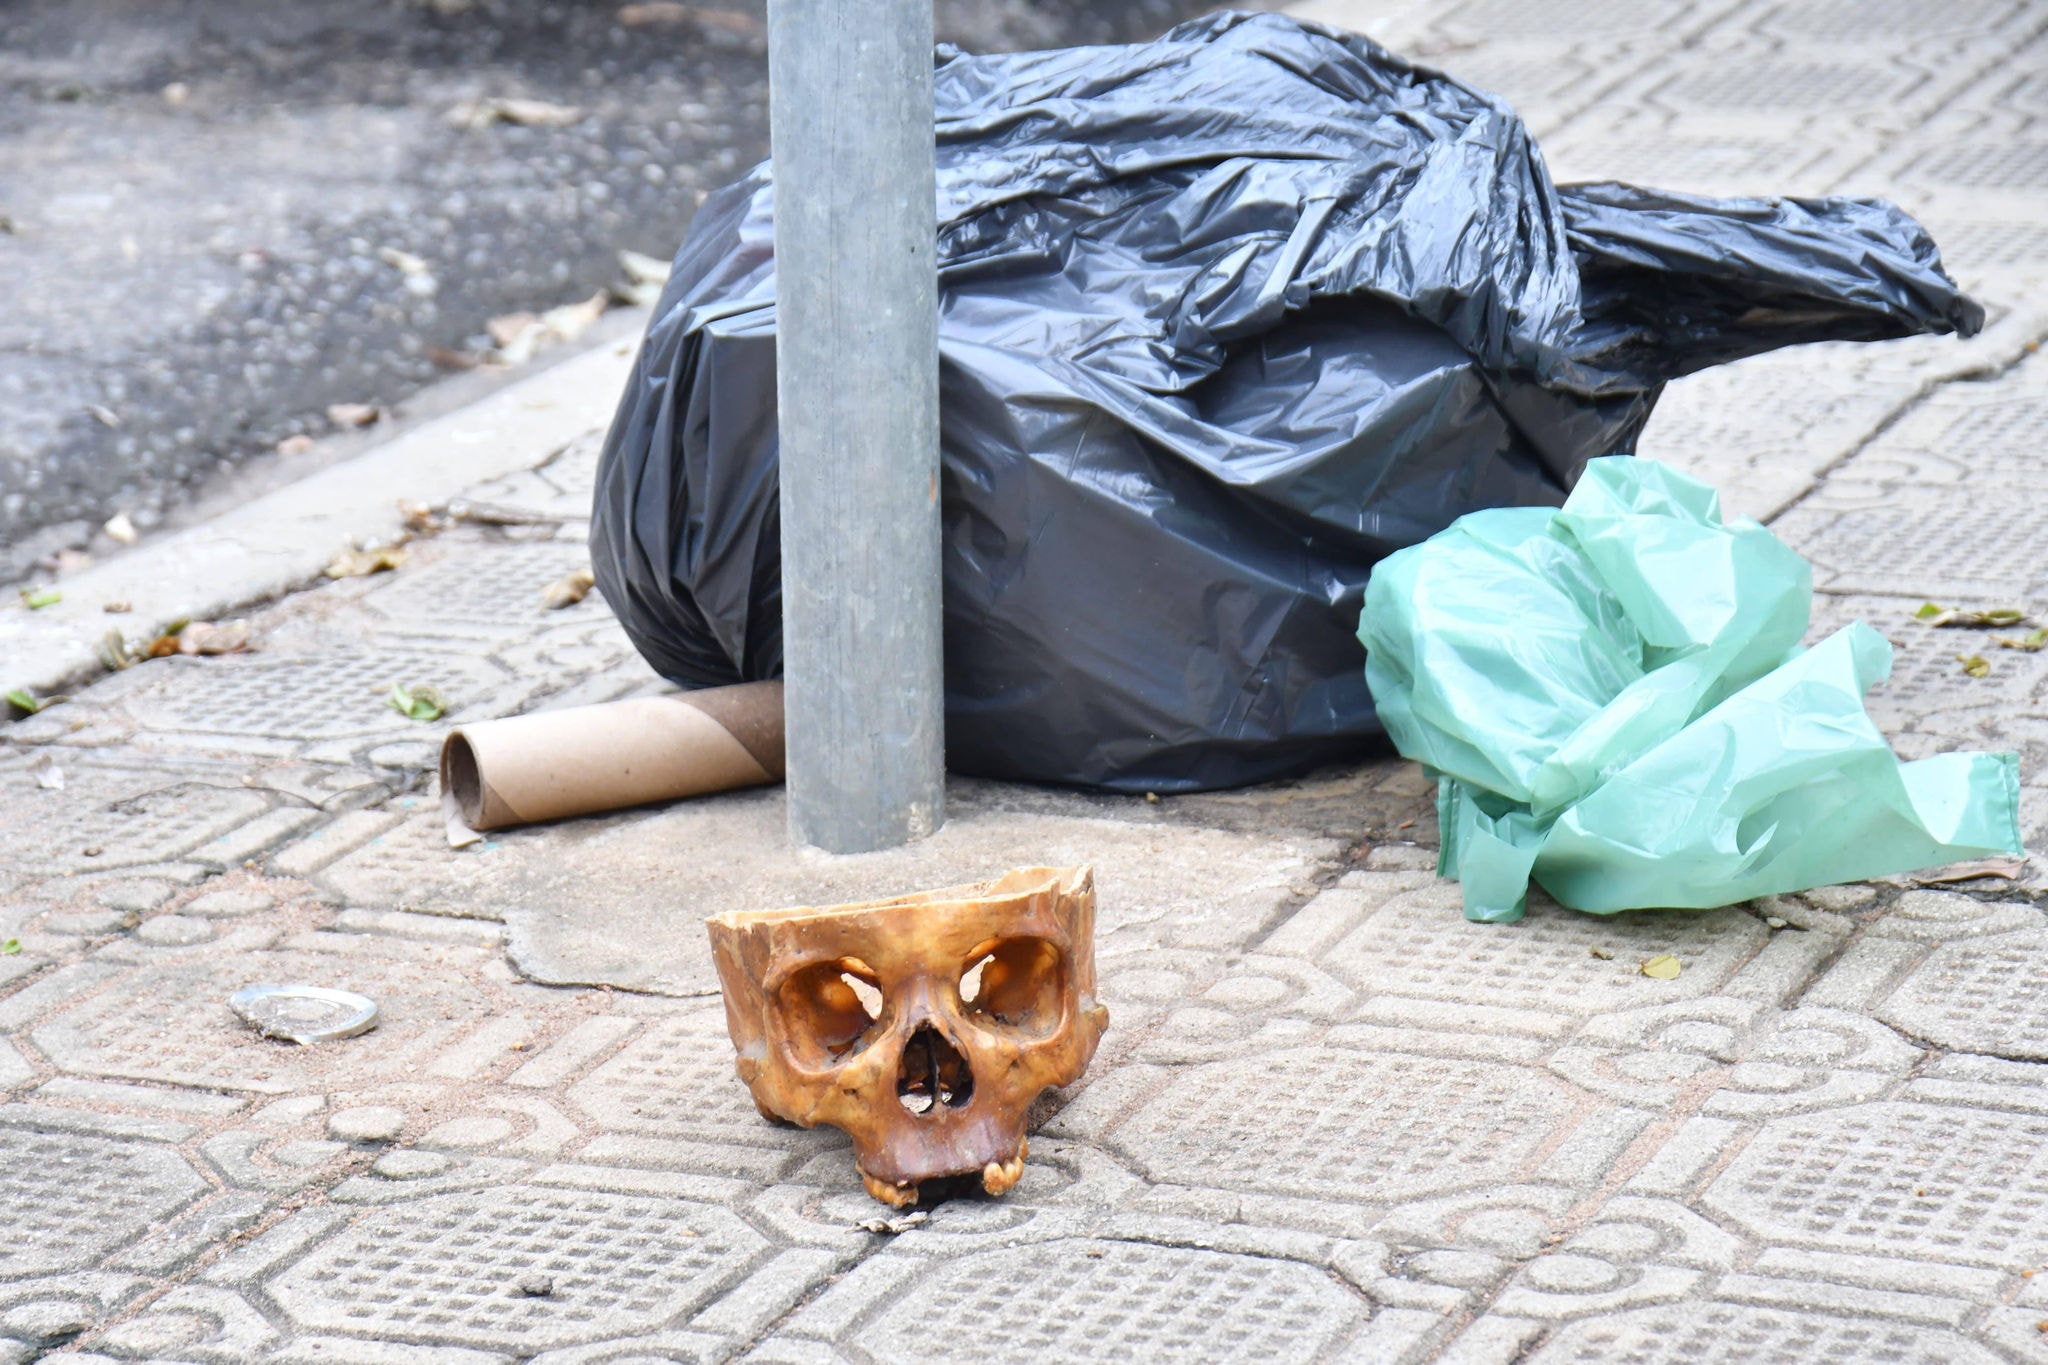 Crânio humano foi encontrado em calçada na cidade de Governador Valadares